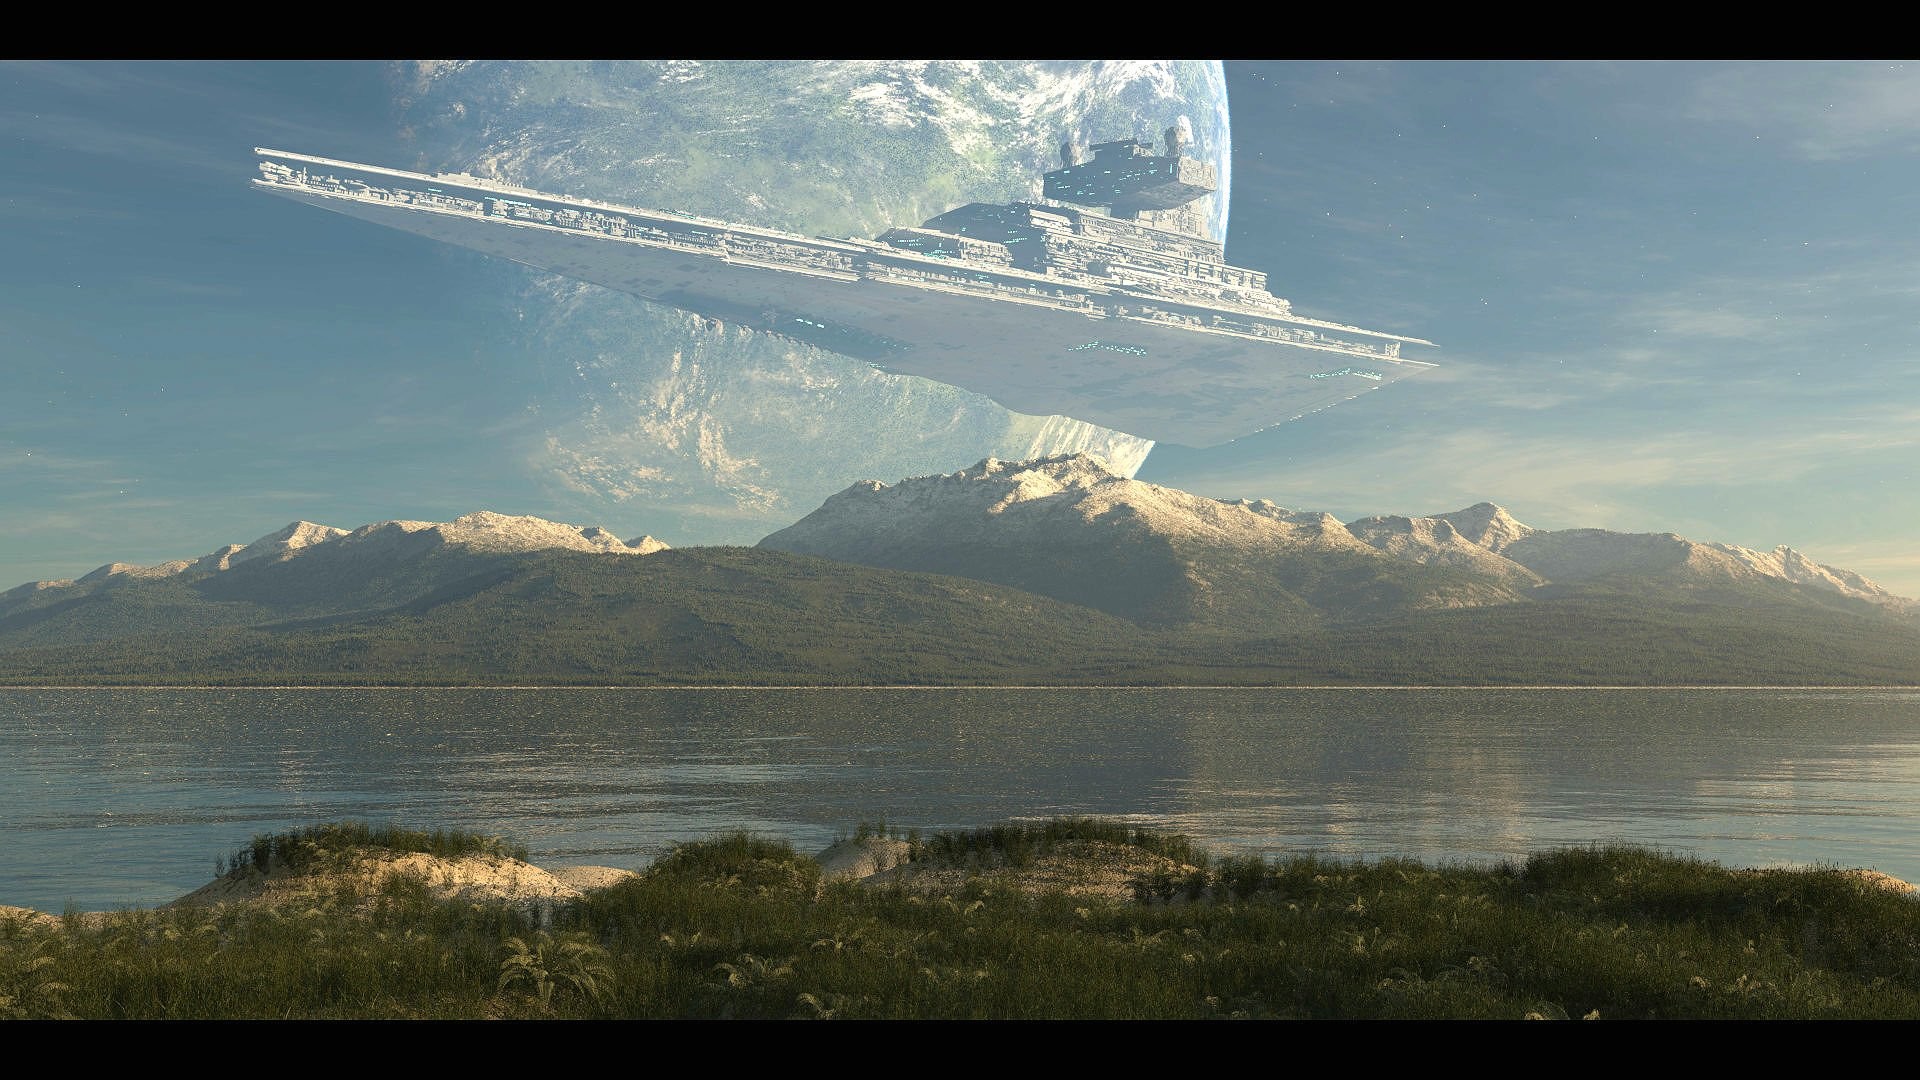 Star Wars Landscape Wallpaper (70+ images)